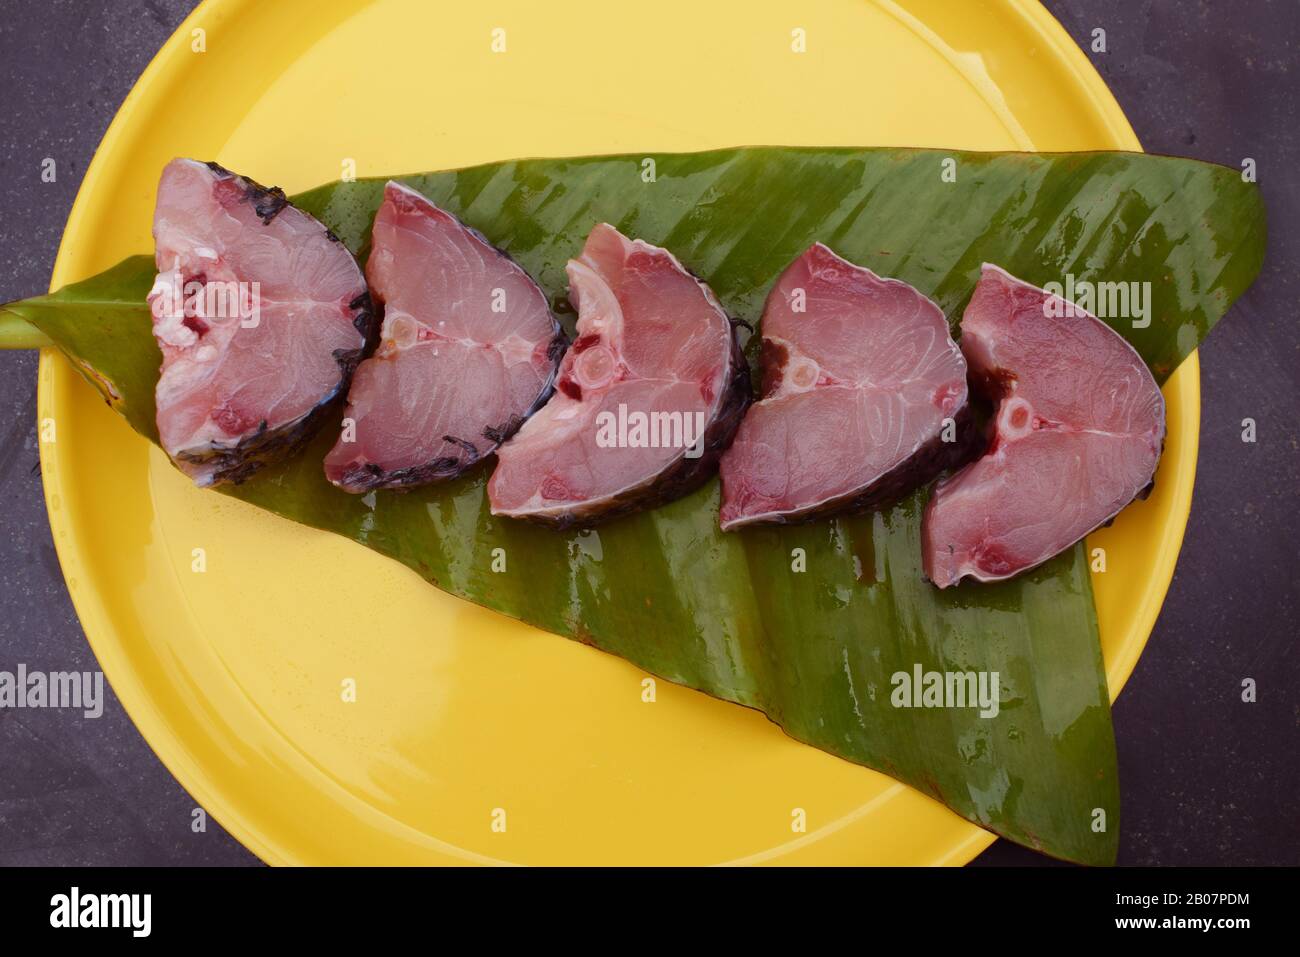 Rohe Schnittstücke von Rohu-Fischen in gelber Platte, die in bangla auch als Rui bezeichnet wird Stockfoto